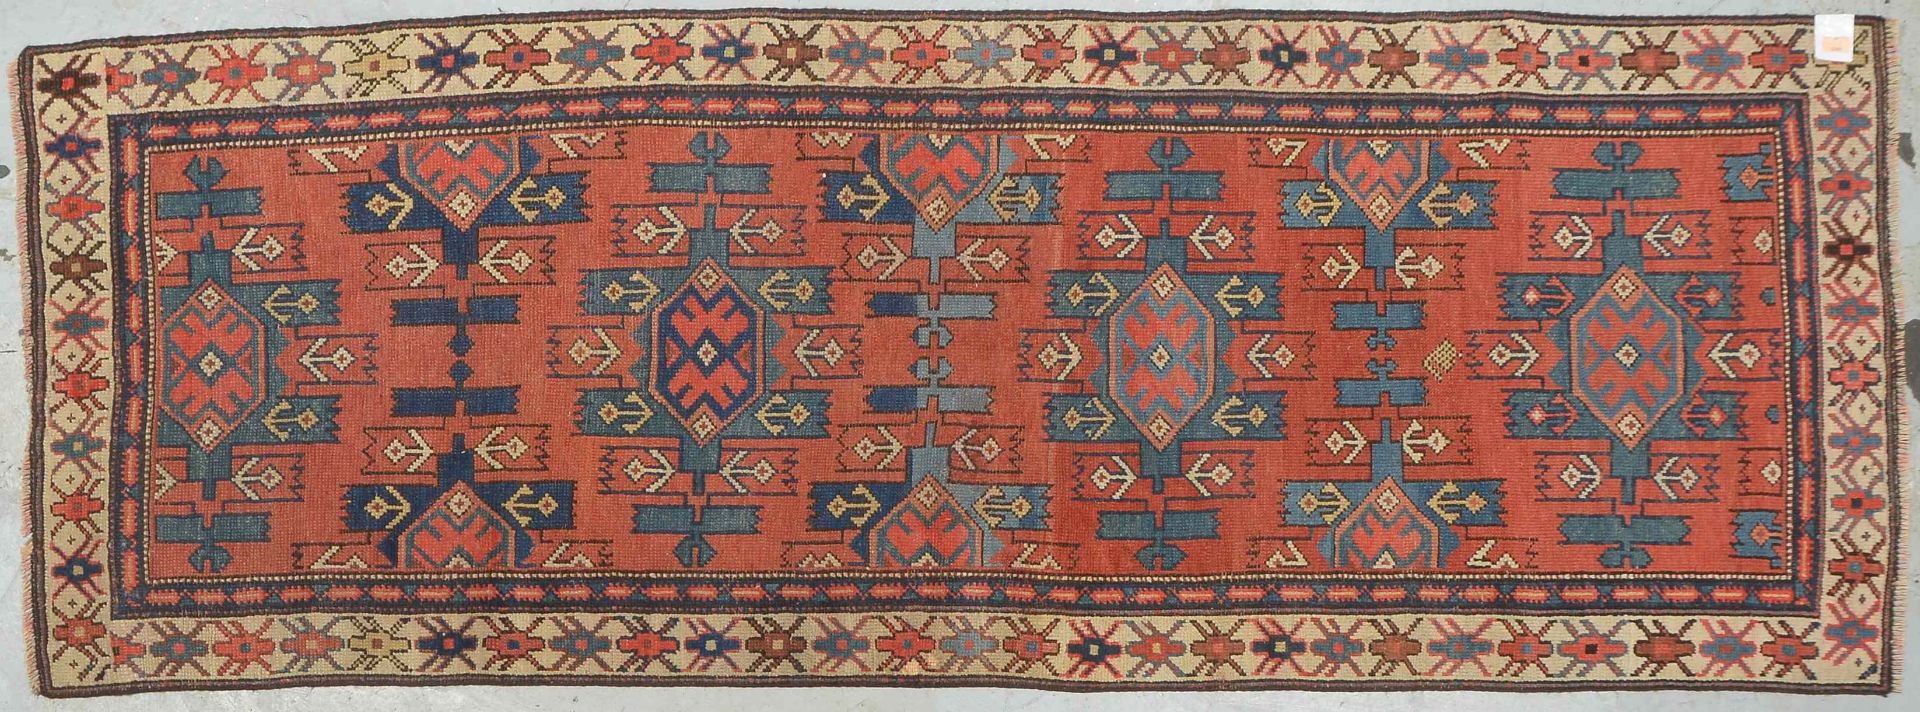 Kaukasische Galerie, antik, Wolle auf Wolle, neu festoniert, Flor gleichmäßig dünn; Maße 245 x 90 cm